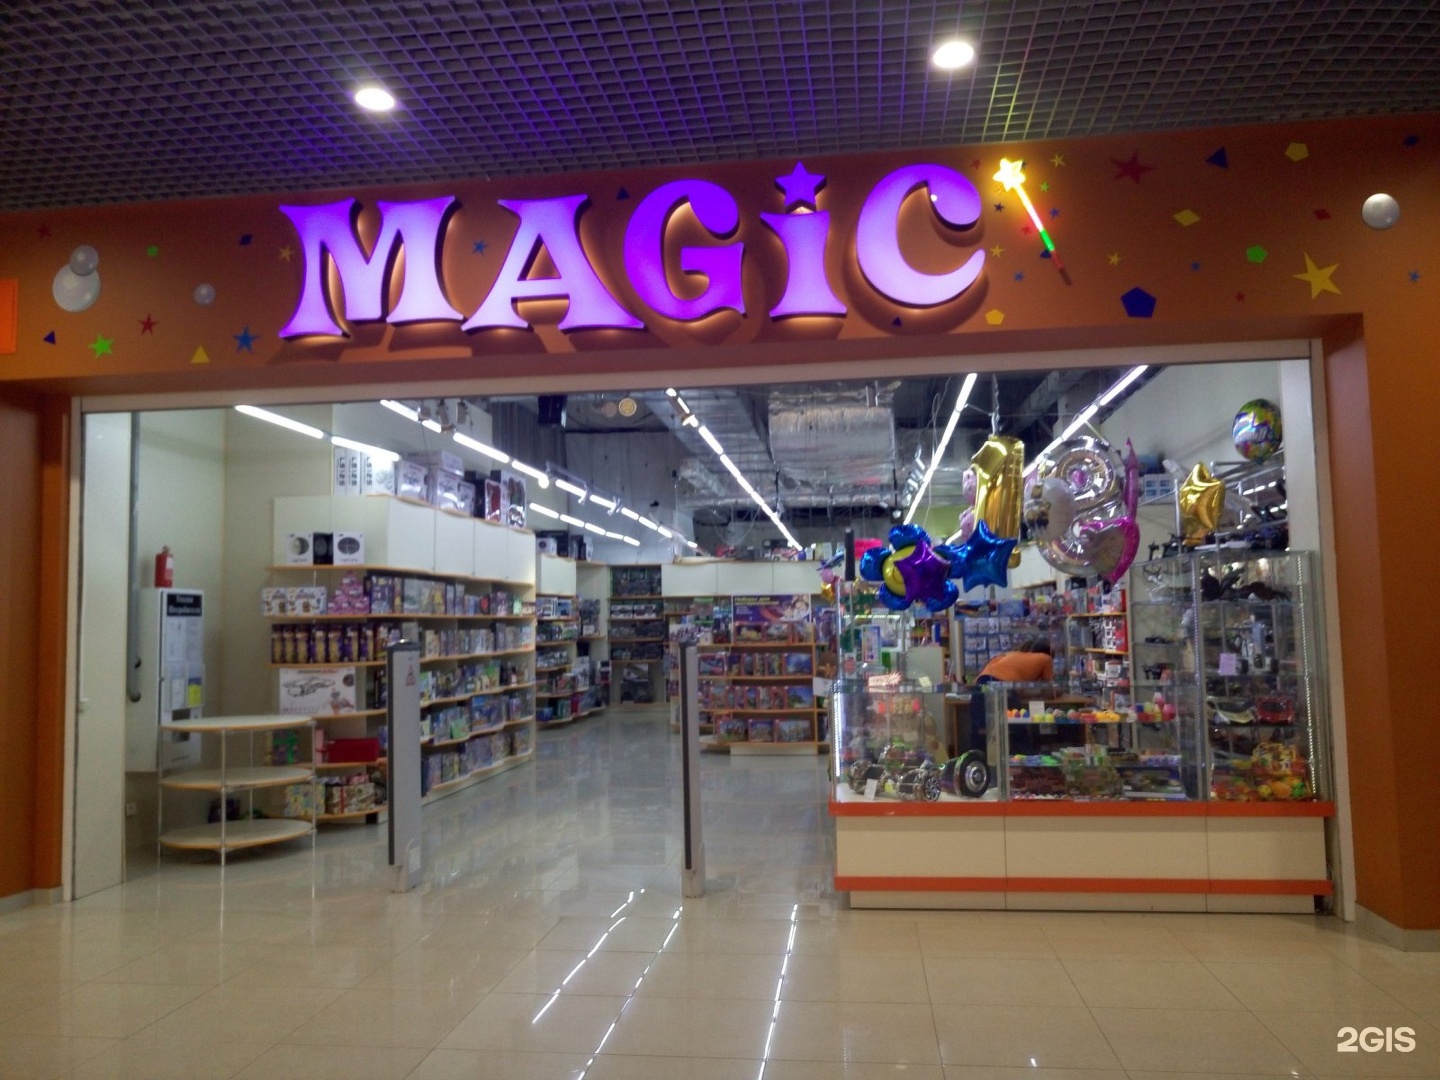 Интернет магазин magic. Magic магазин. Волшебный магазин игрушек. Magic магазин игрушек. Мэджик магазин игрушек.